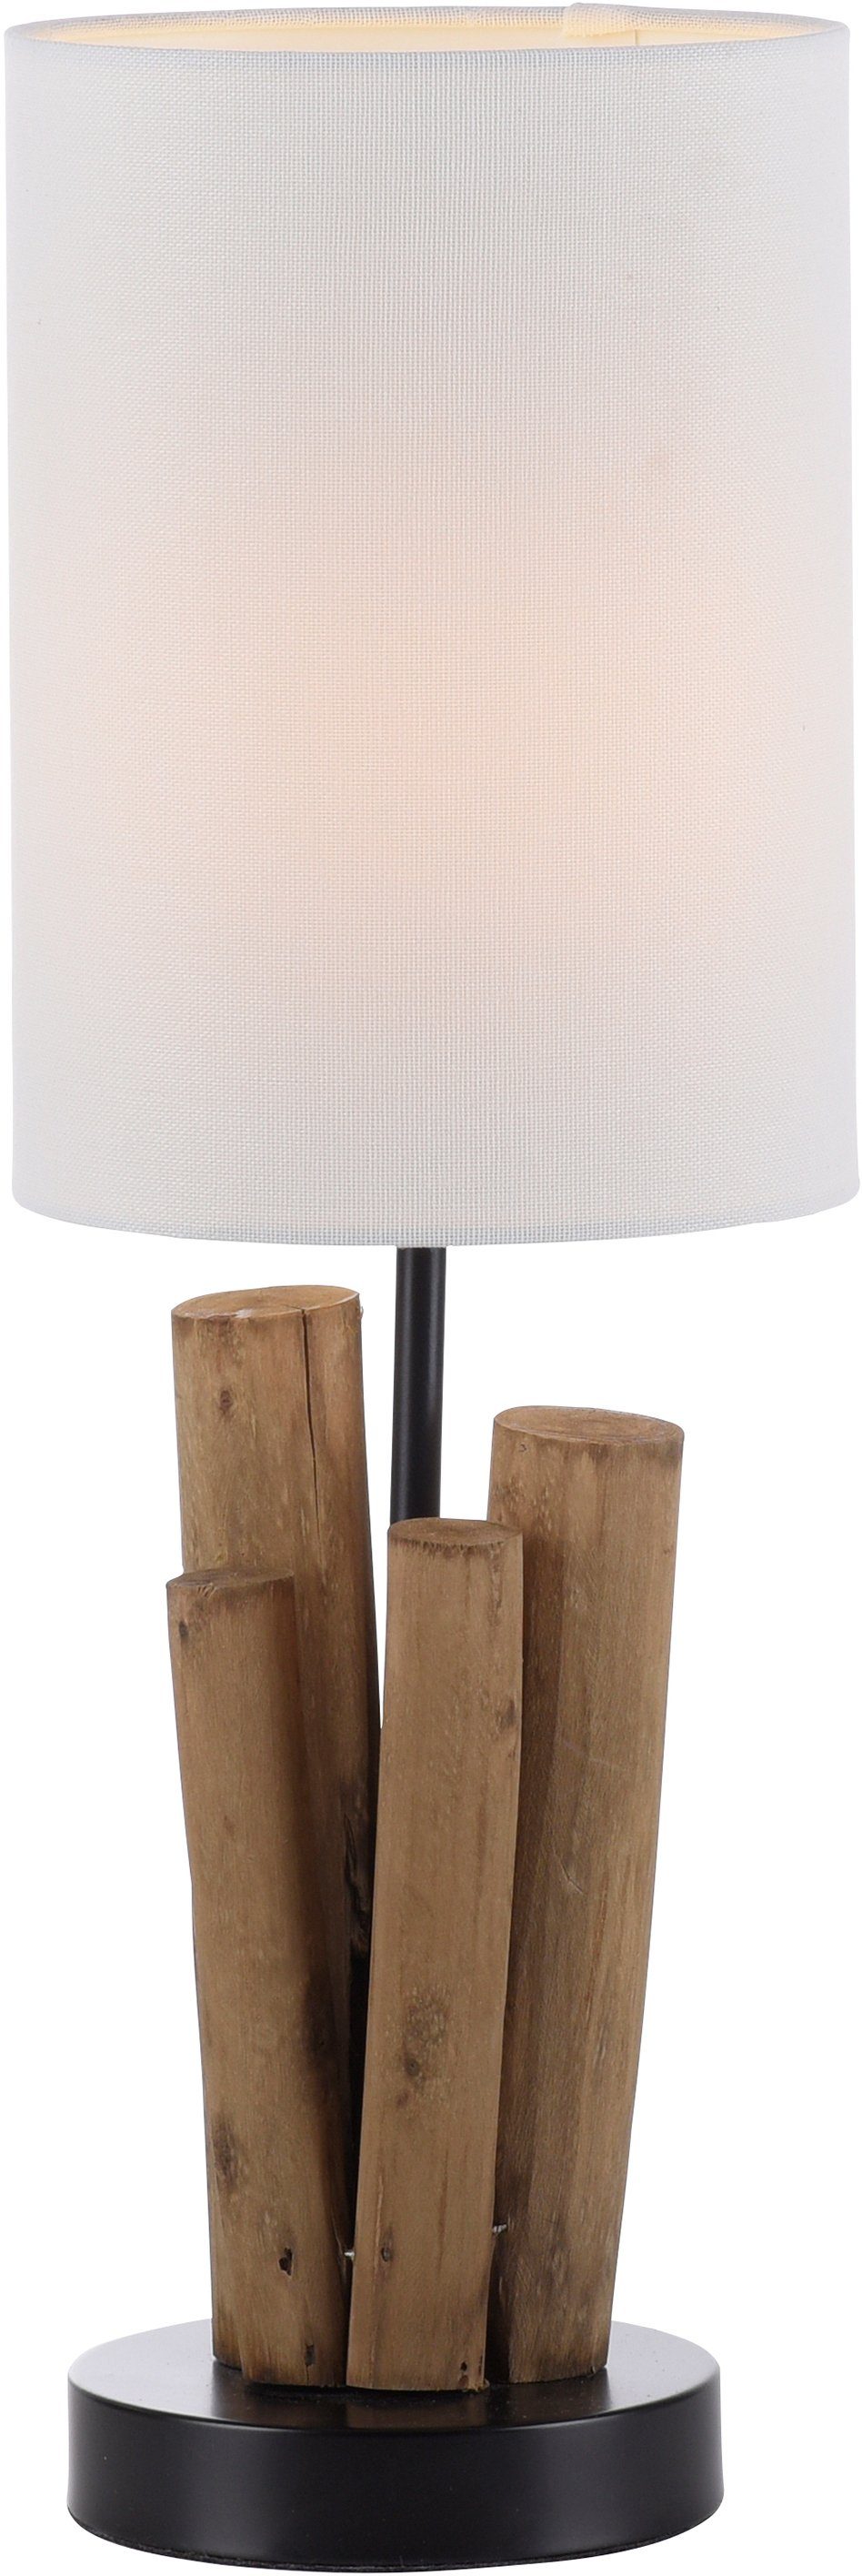 - Optik, Tischlampe Home Leuchtmittel Horgau, Vintage Holz Style, Tischleuchte wechselbar, Schnurschalter, affaire